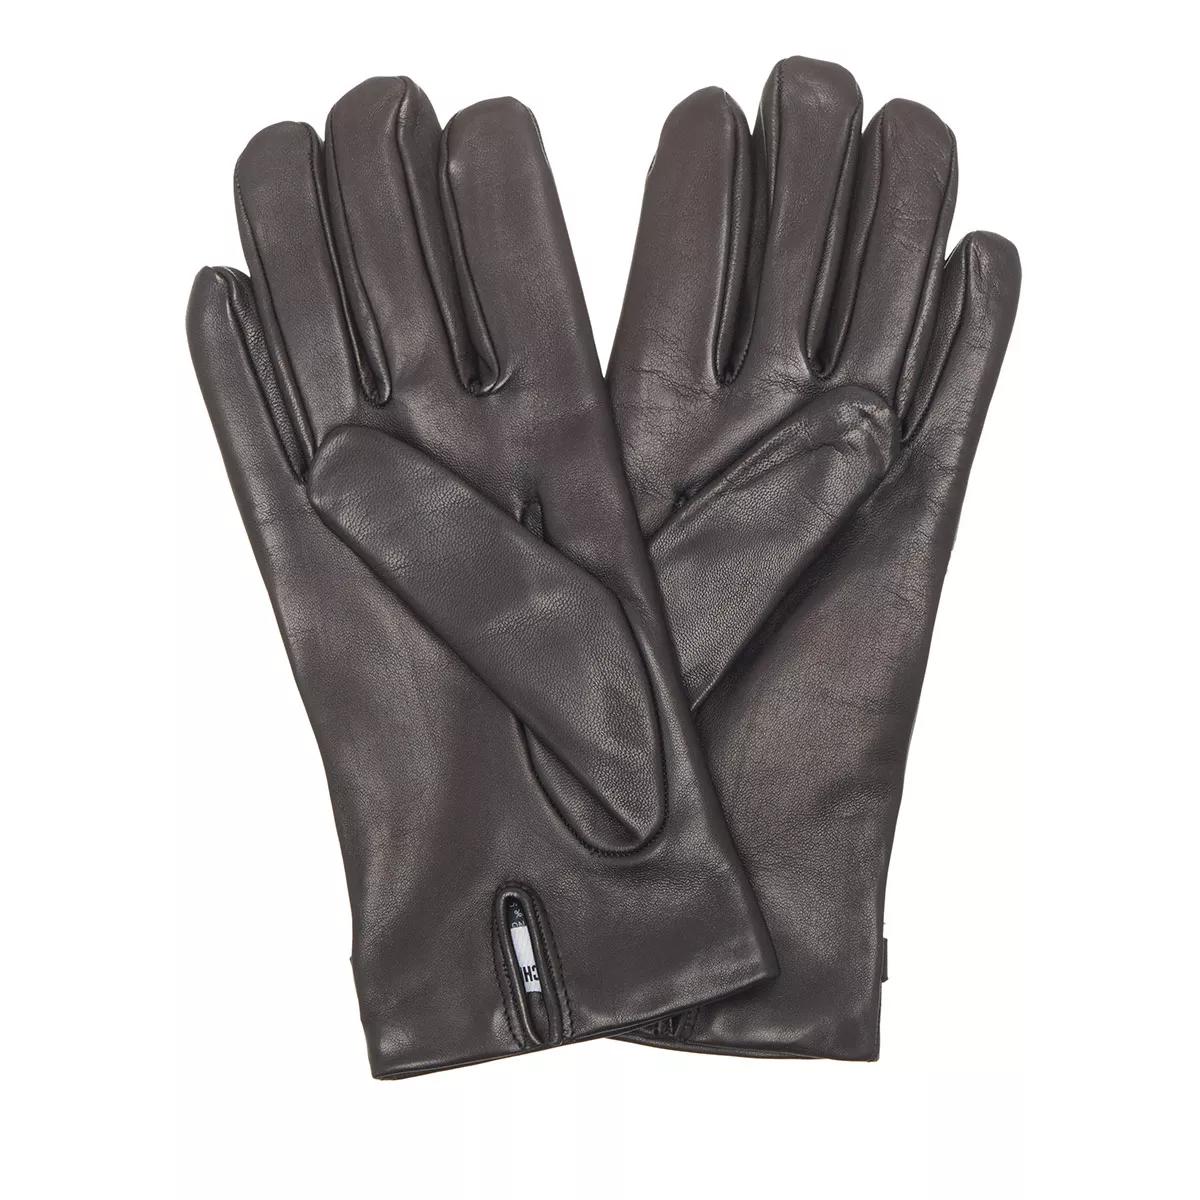 Moschino Handschuhe - Glove M2396 - Gr. 7 - in Schwarz - für Damen von Moschino